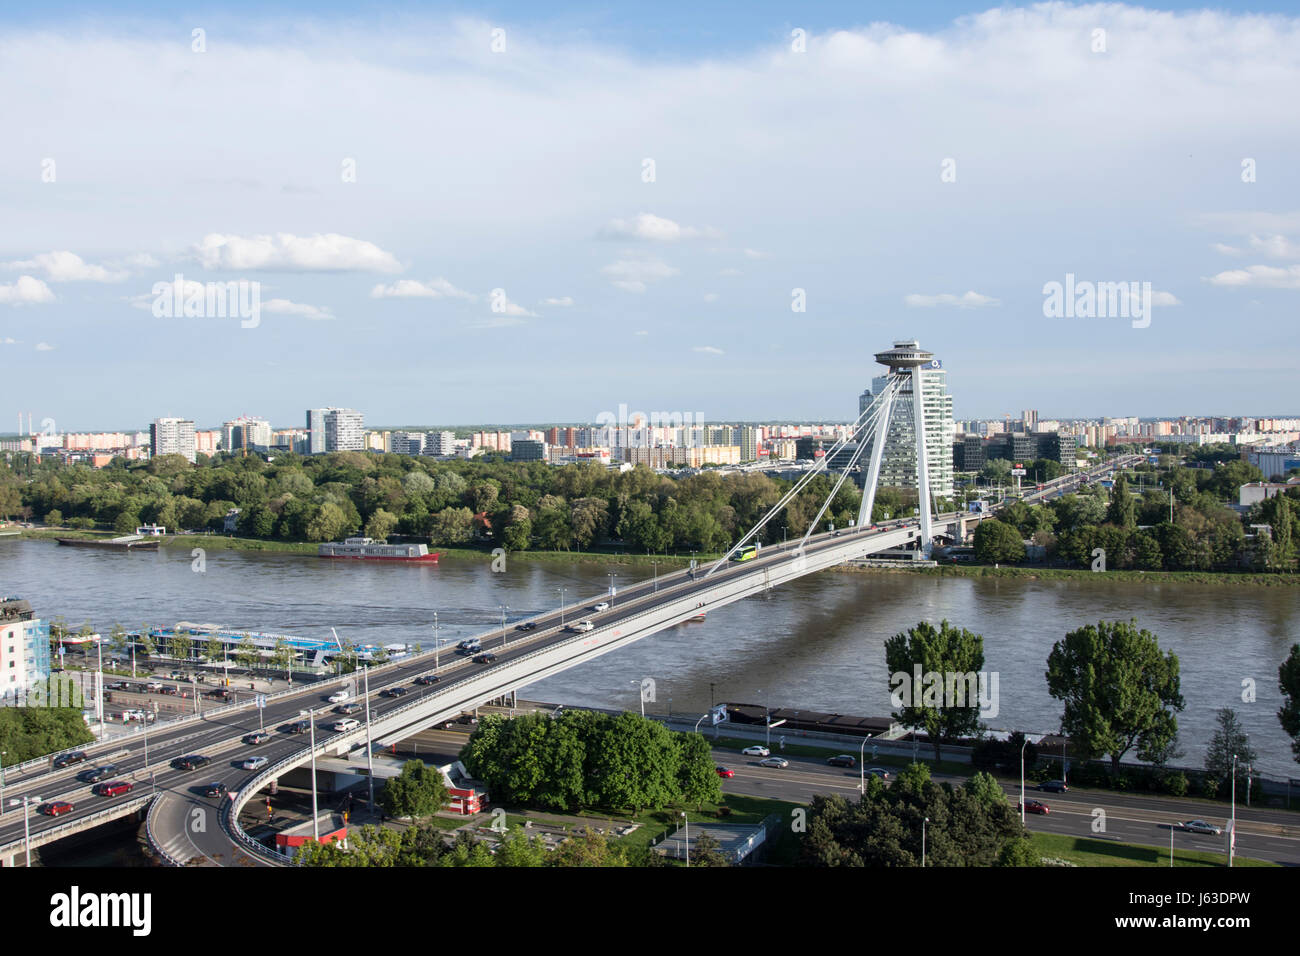 The UFO bridge tower on the Danube river in Bratislava Stock Photo